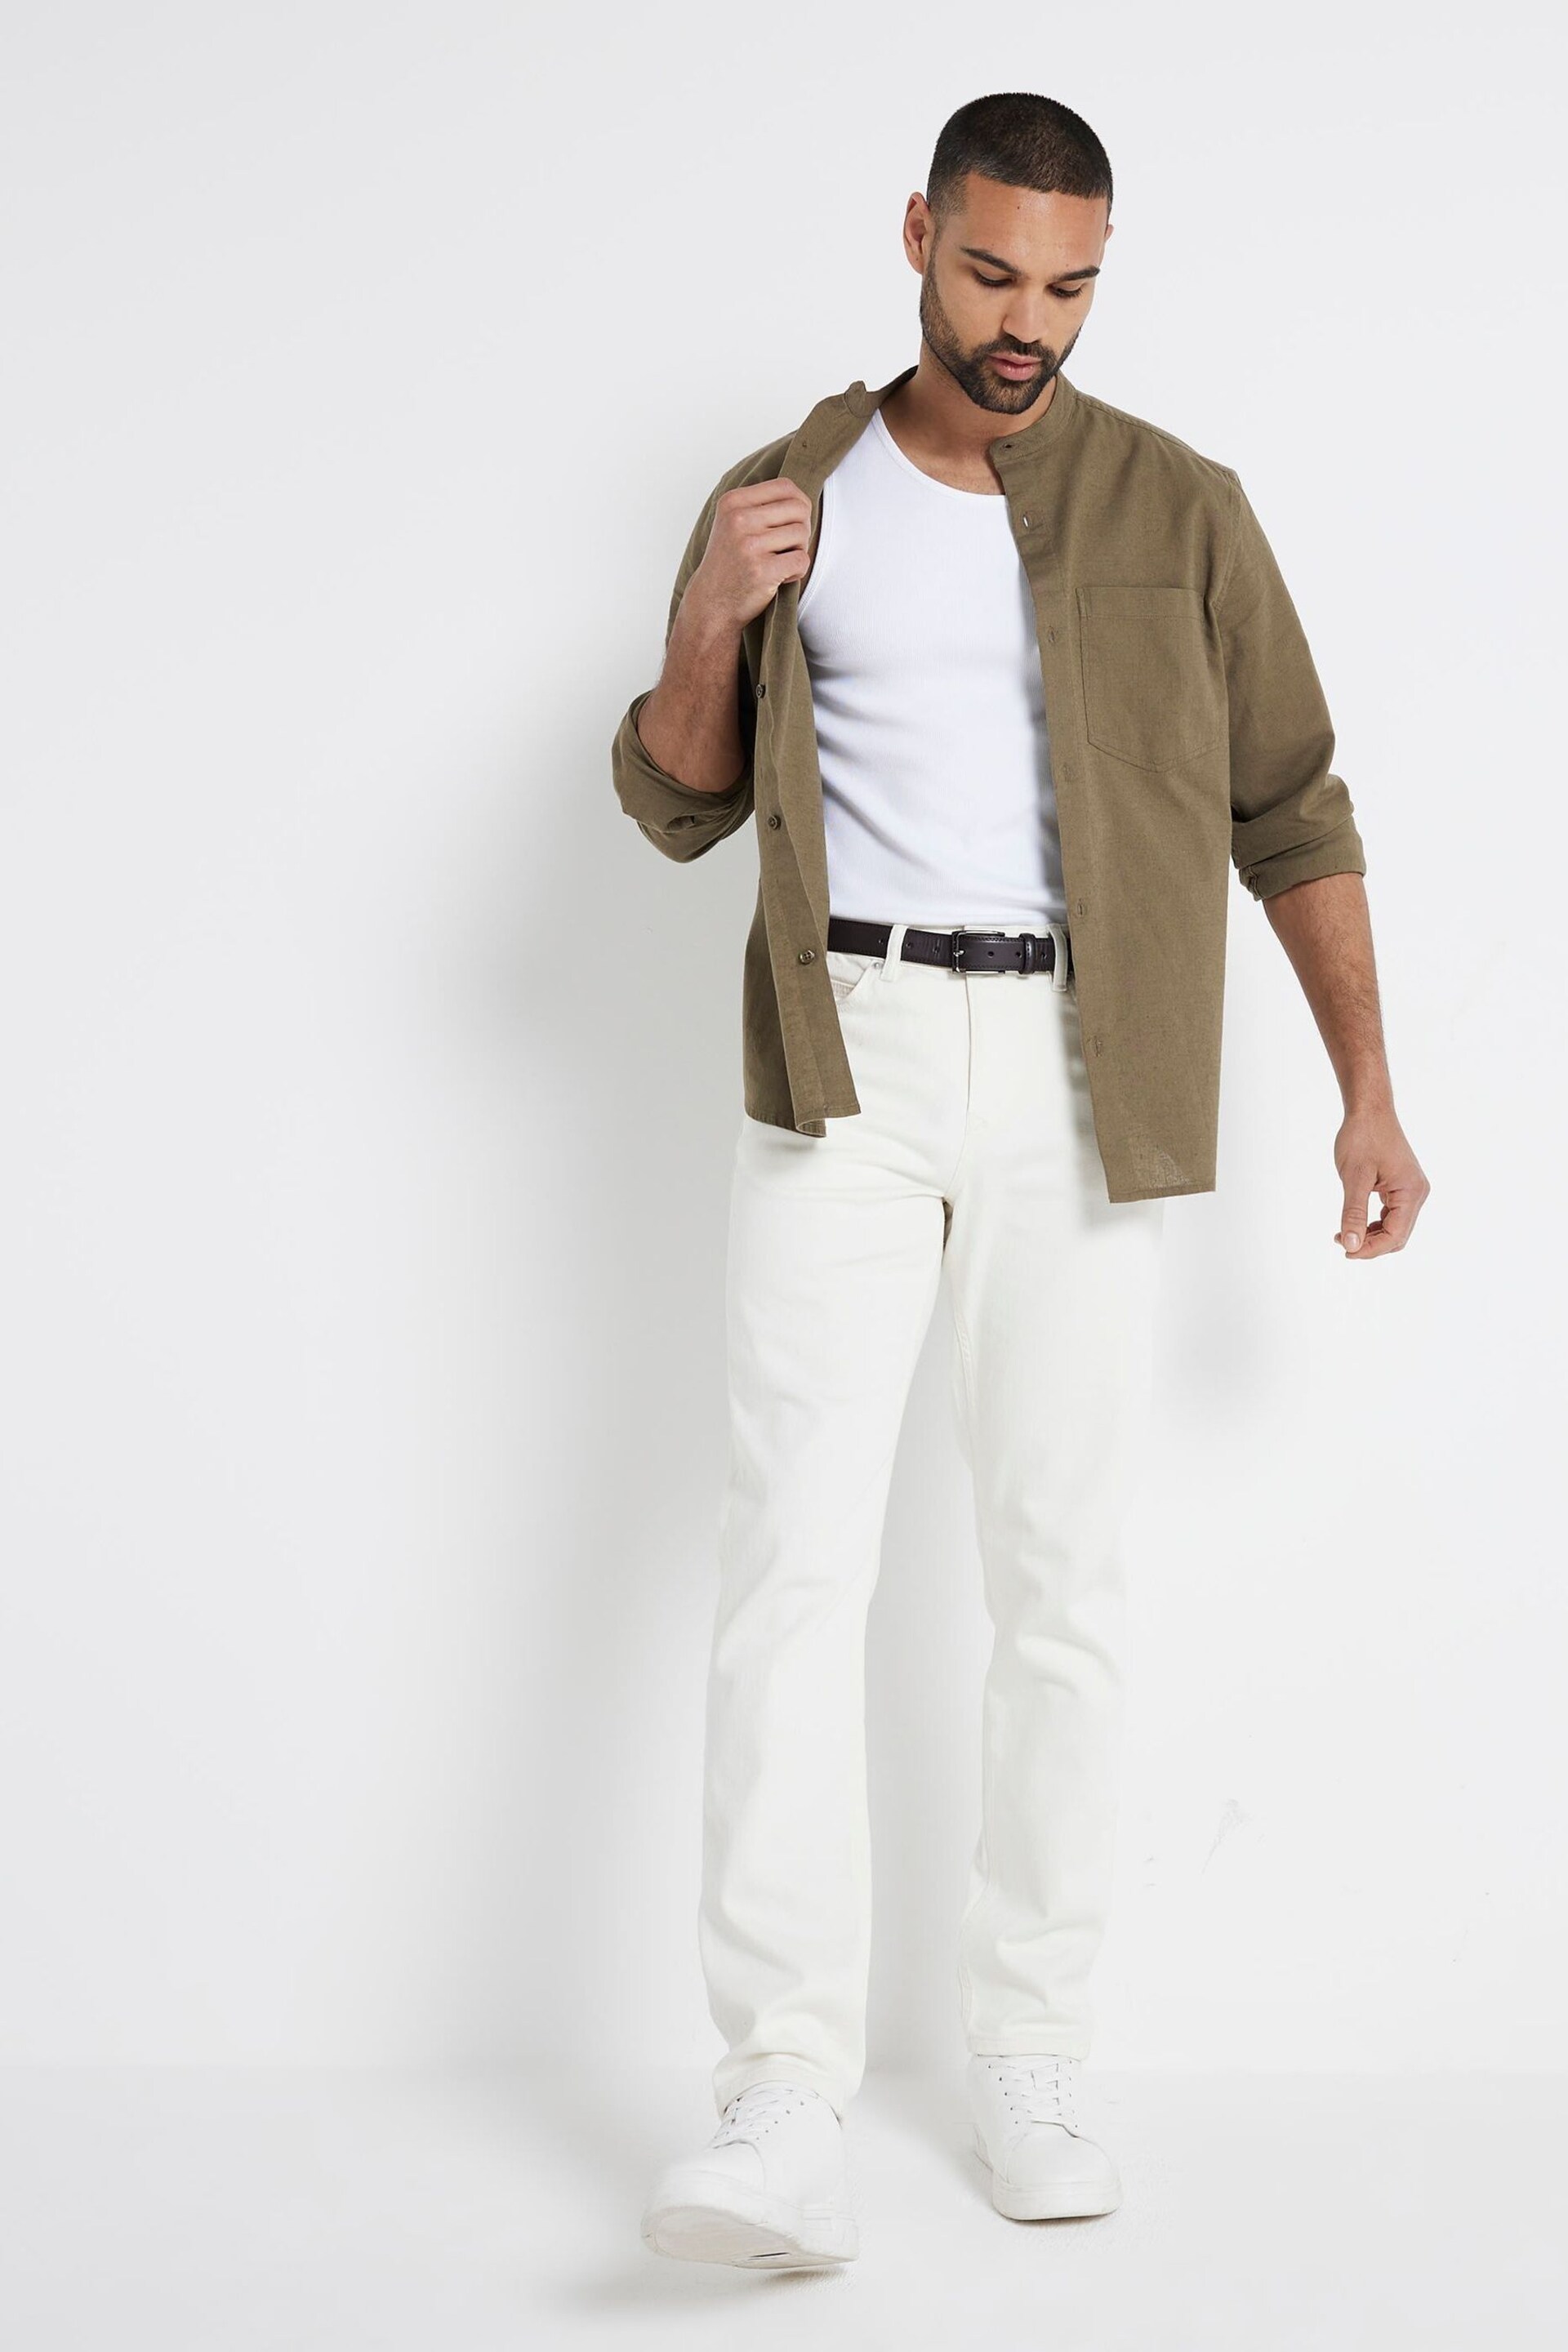 River Island Green Regular Fit Long Sleeve Linen Blend Shirt - Image 2 of 4